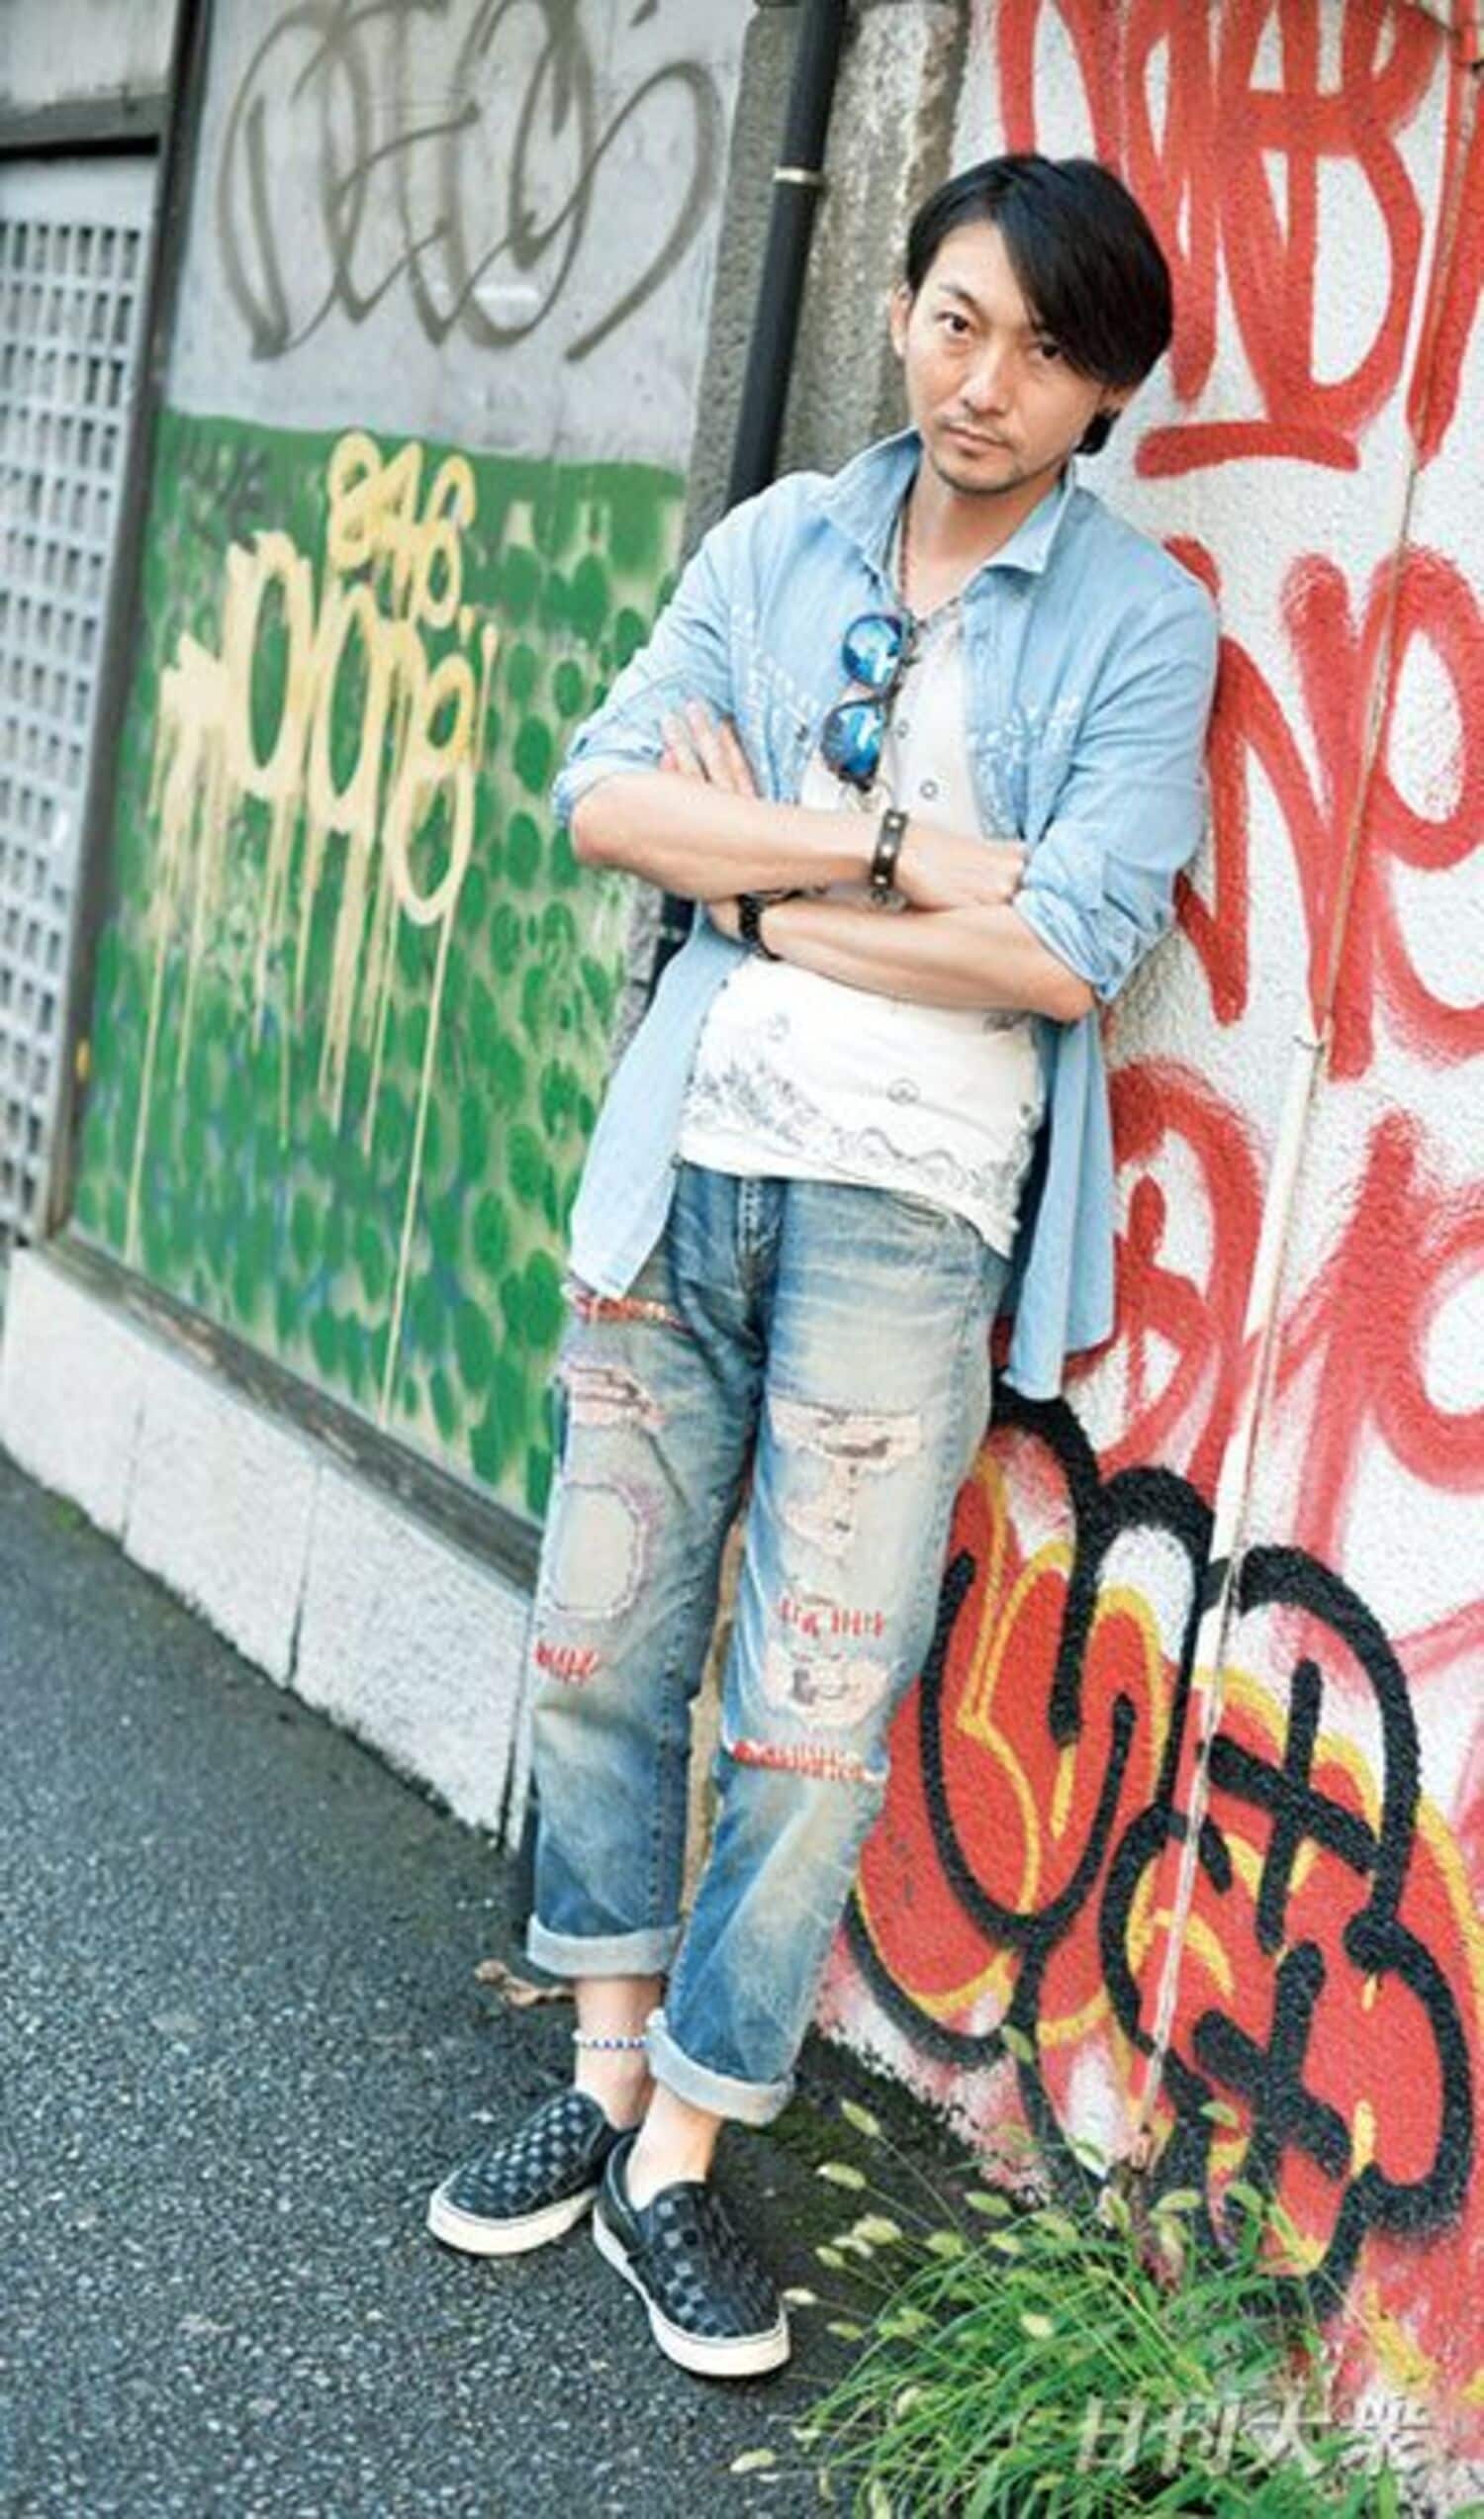 俳優・波岡一喜「俺、めちゃくちゃ負けず嫌いなんです」の画像